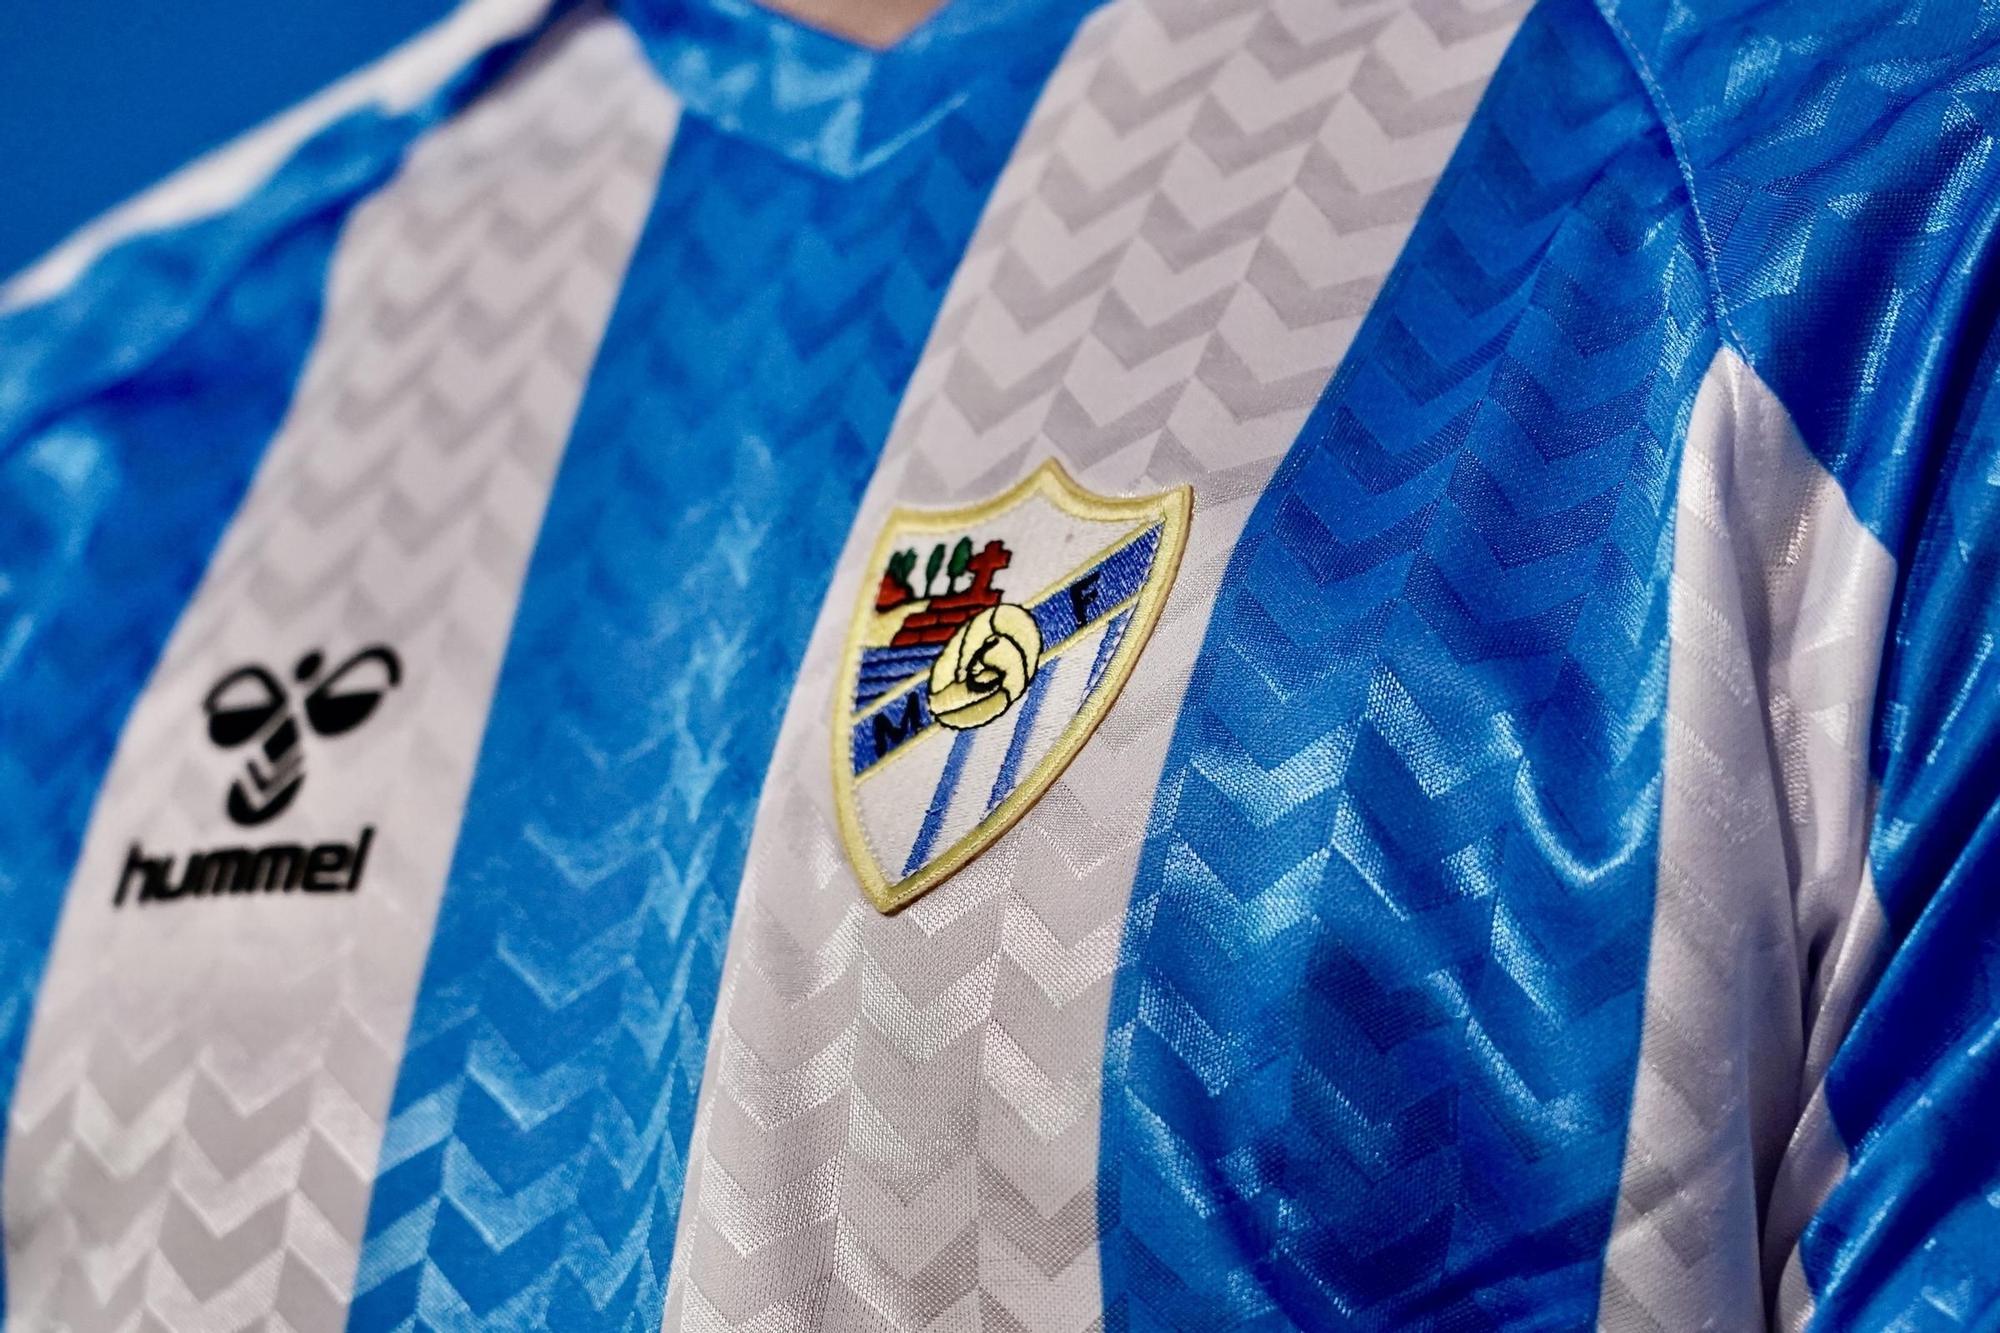 Presentación de la camiseta conmemorativa del 120 aniversario del fútbol en Málaga